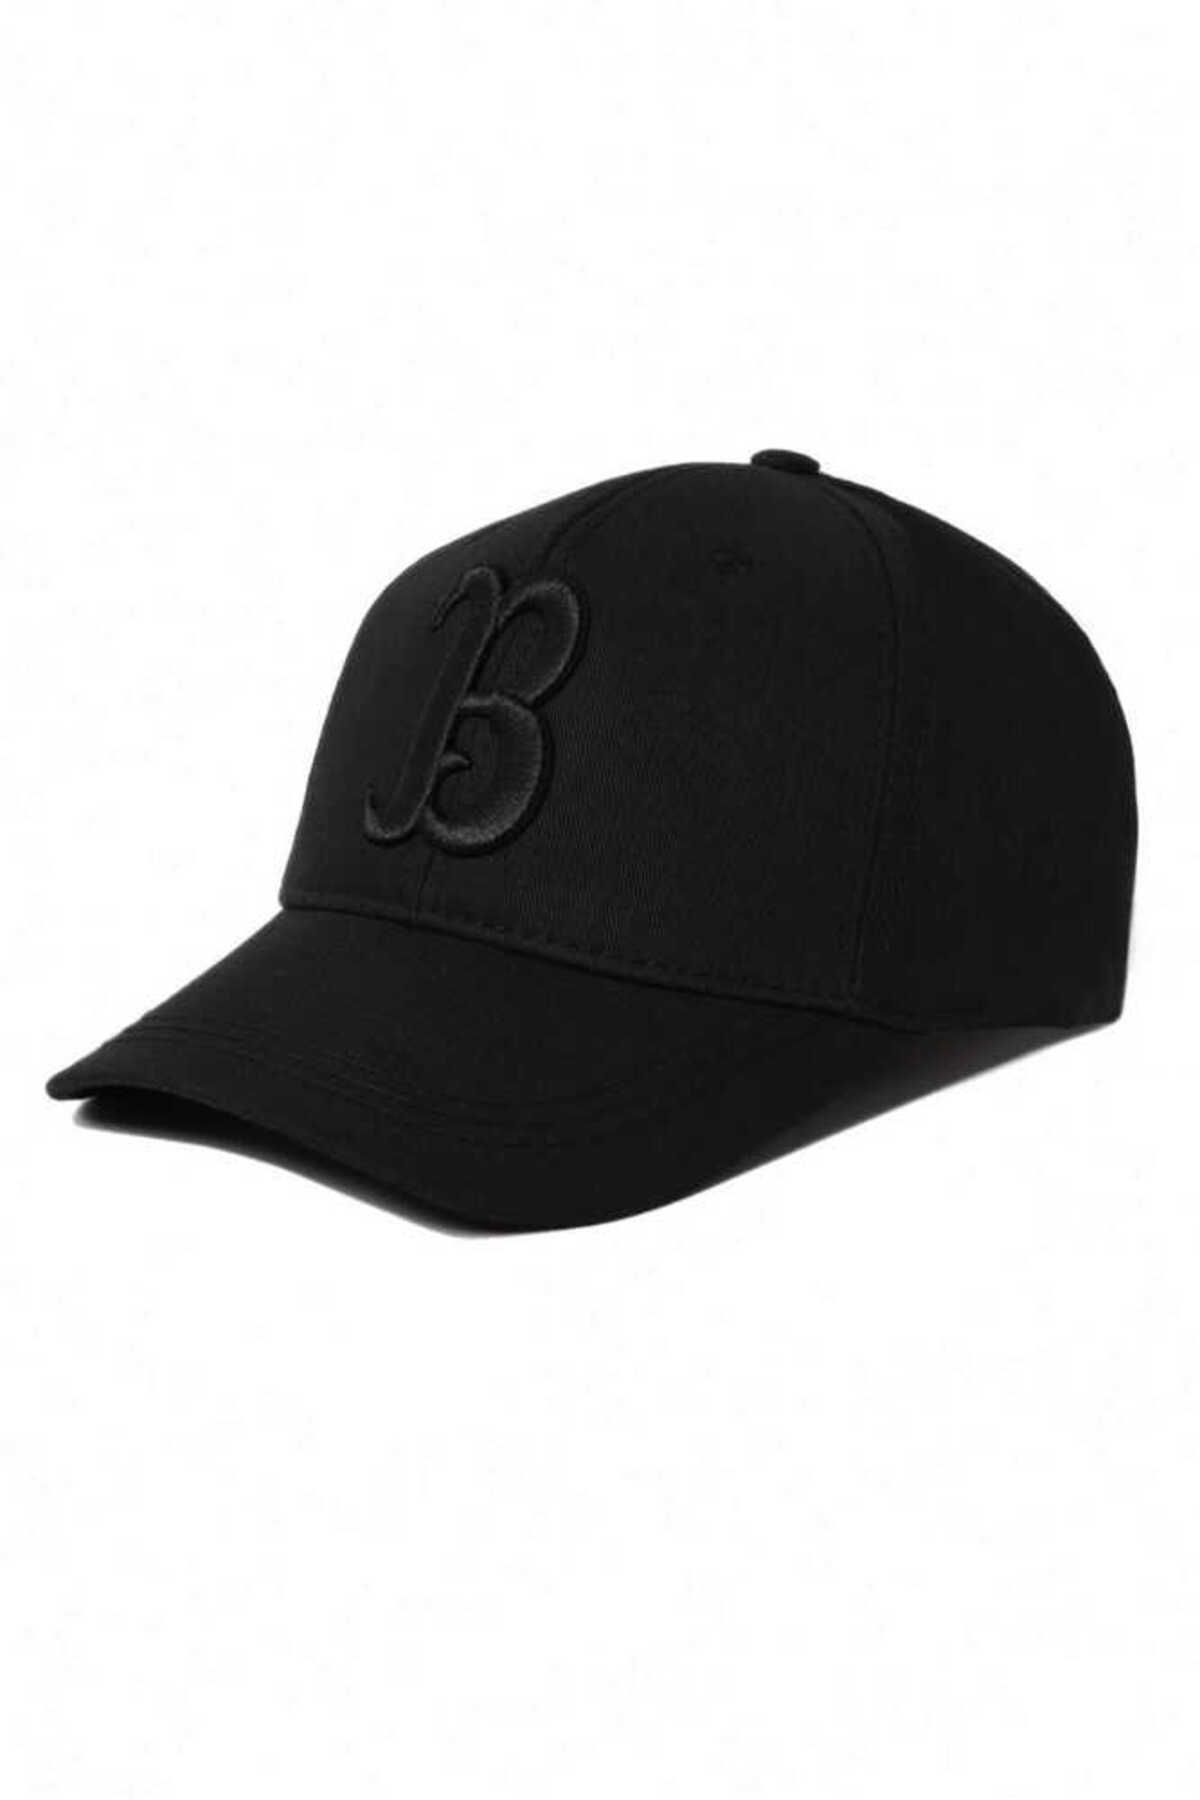 Ucla Pasedena Siyah Baseball Cap Nakışlı Unisex Şapka